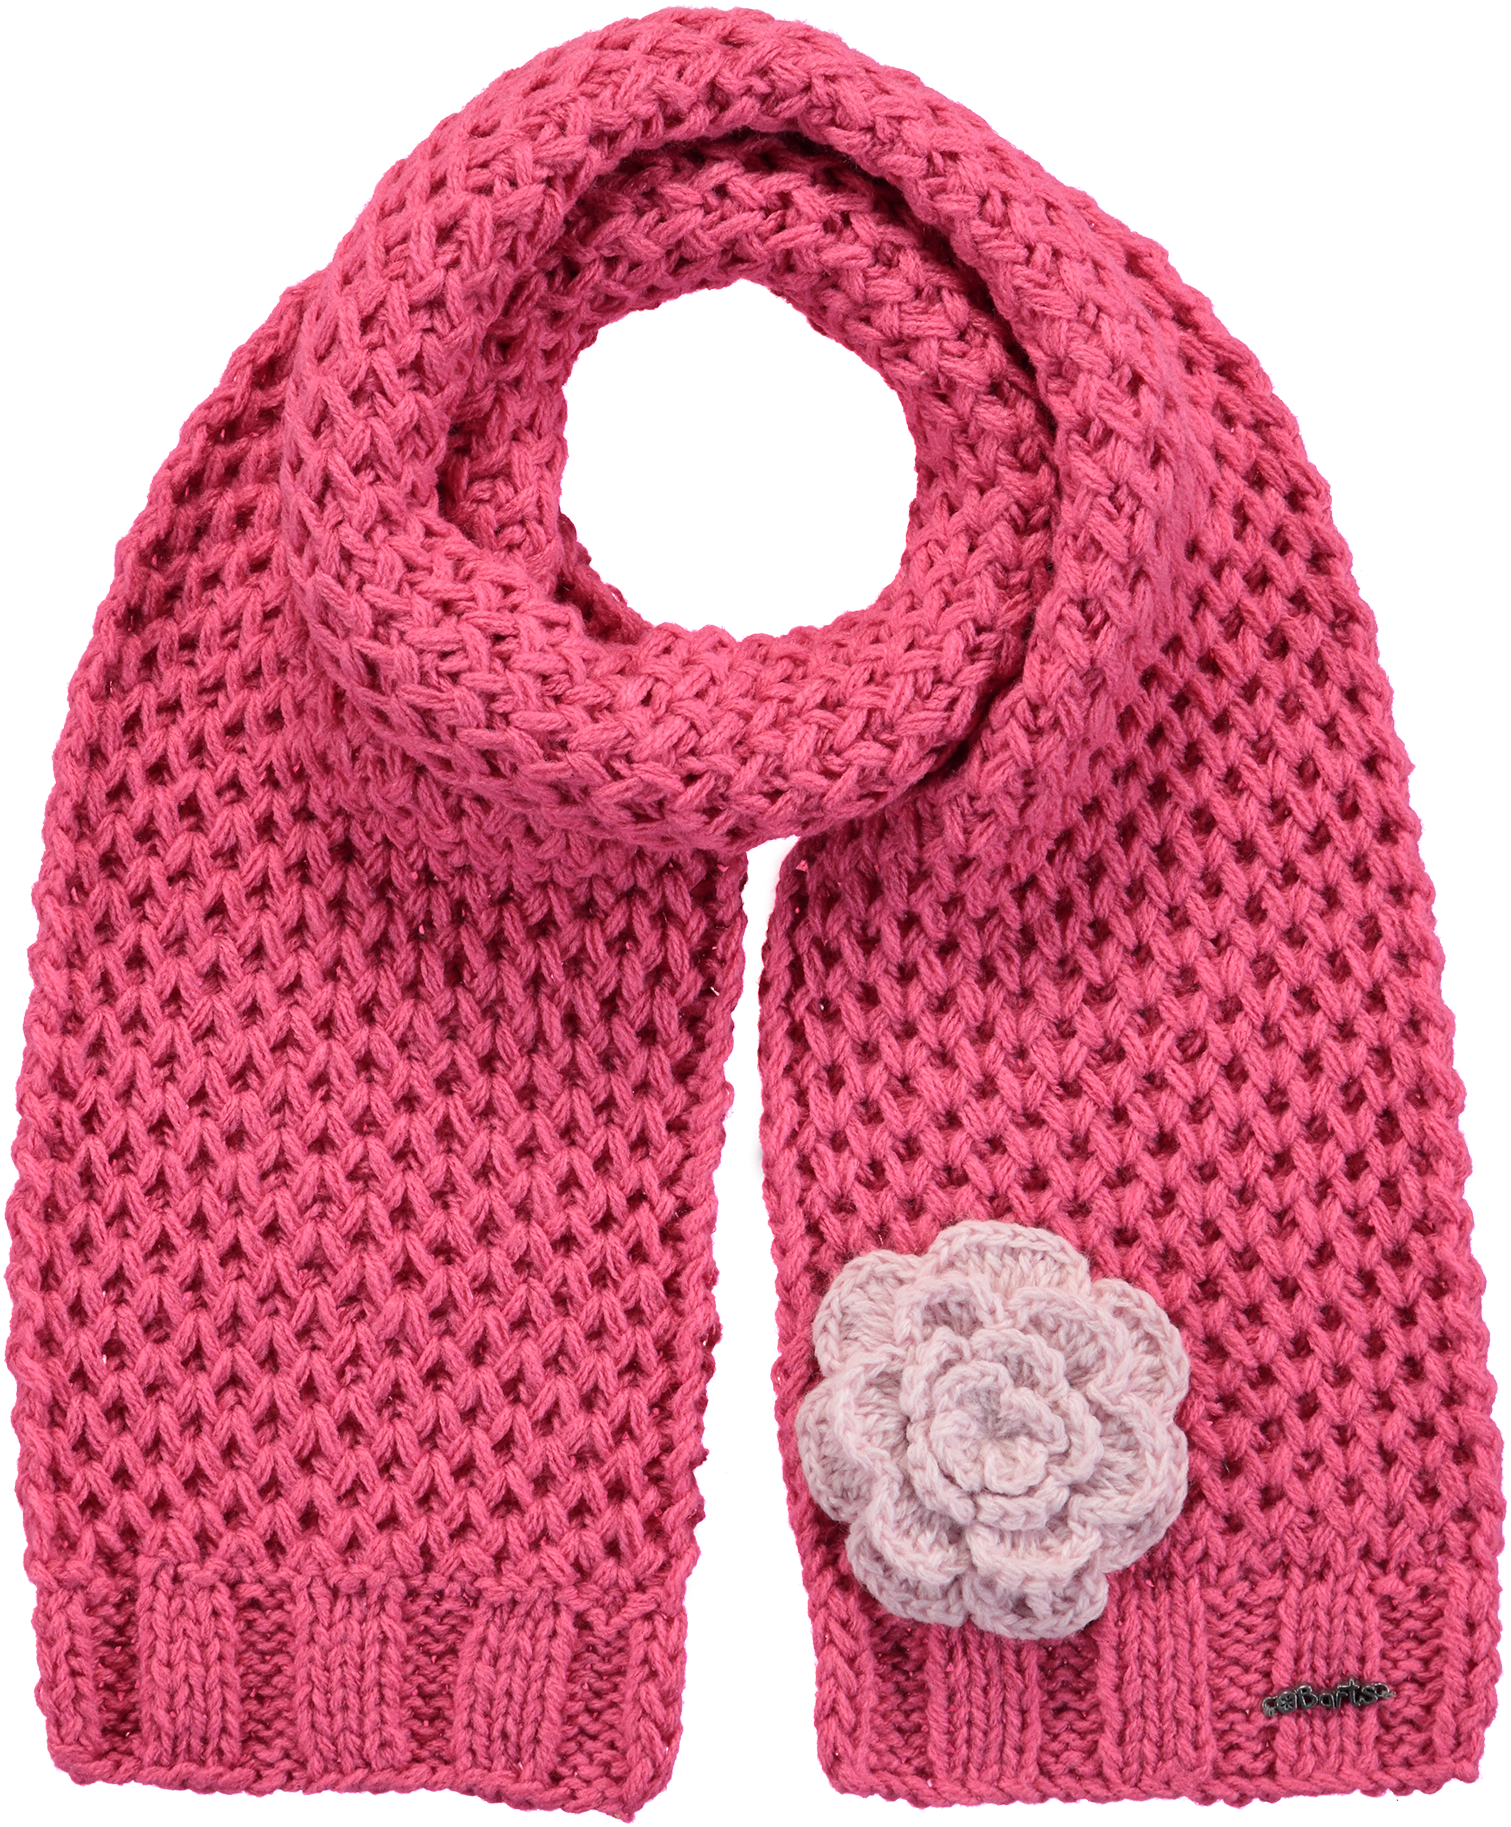 Crochet Rose Scarf Png Crochet Rose Scarf - Barts Mädchen Kinder Schal (1511x1827), Png Download